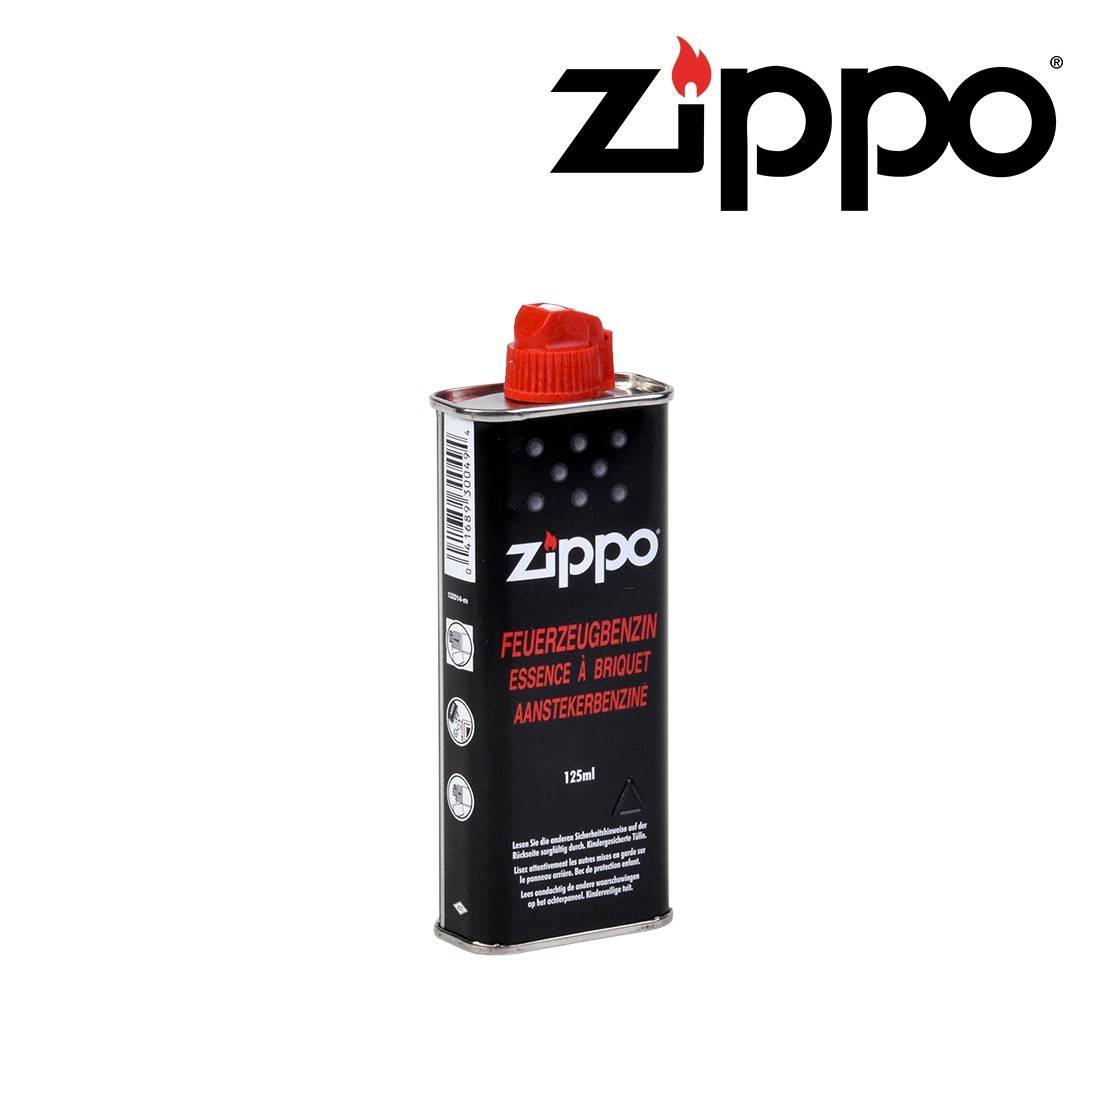 Essence zippo Recharge de petrole et essence pour briquet zippo